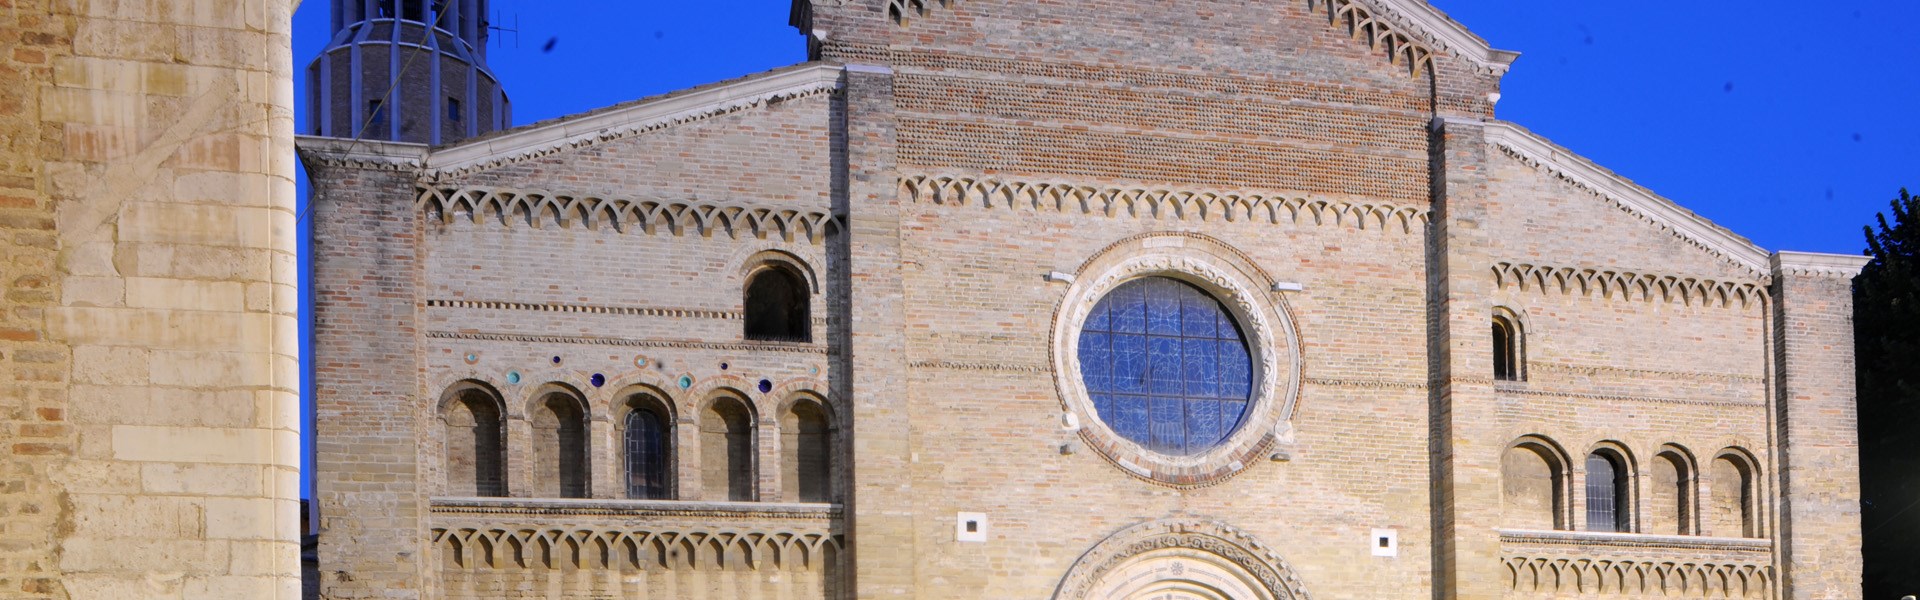 Fano - Duomo Cattedrale di Santa Maria Maggiore